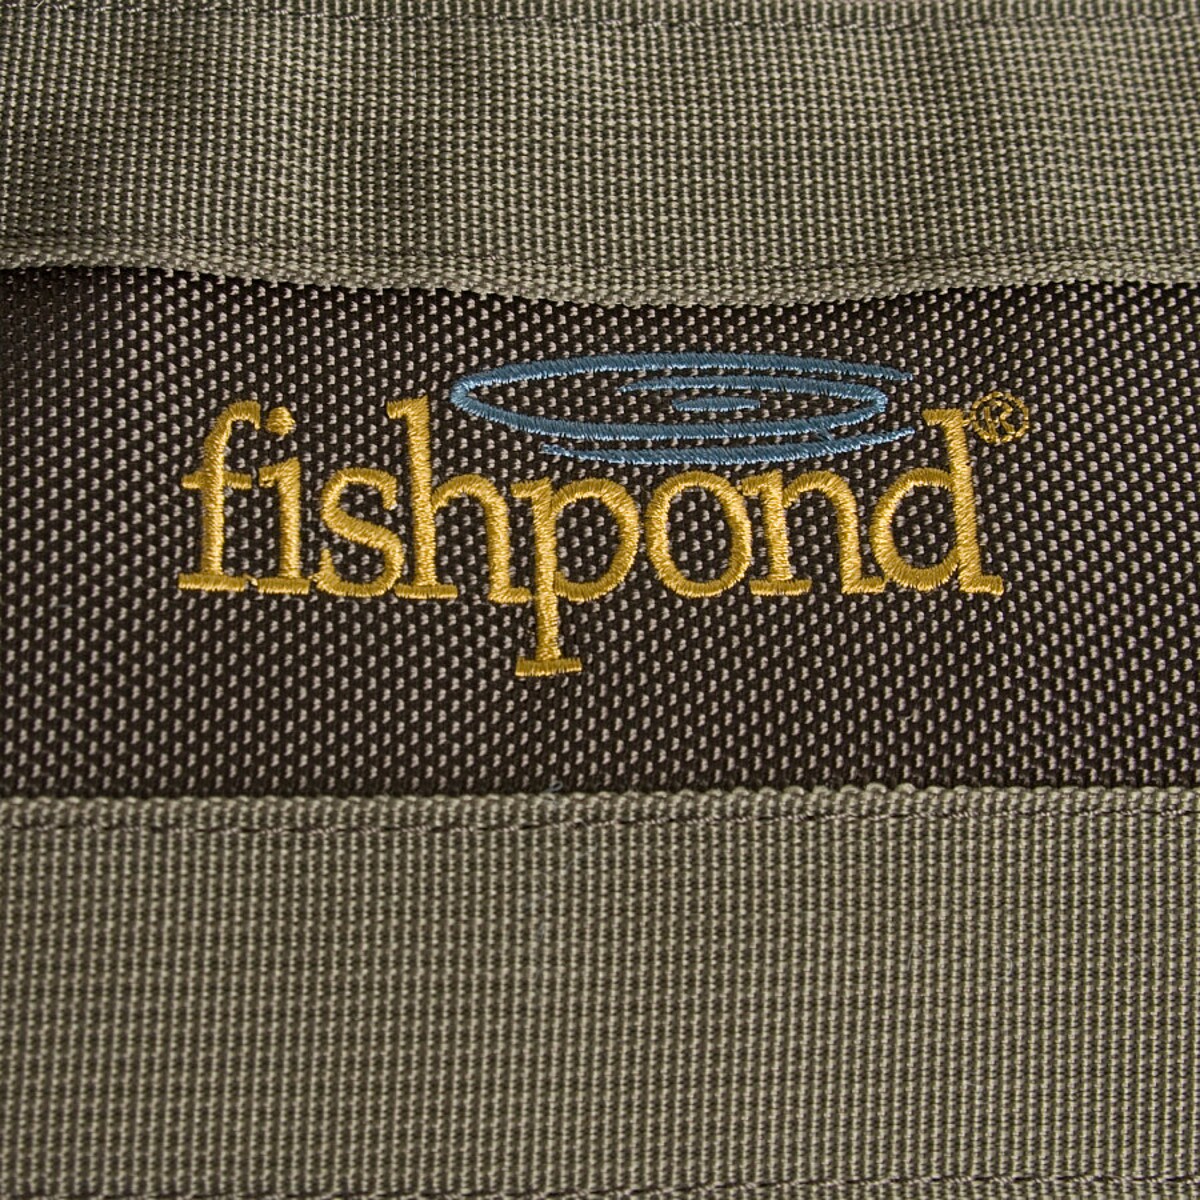 Fishpond Cimarron Wader / Duffel Bag